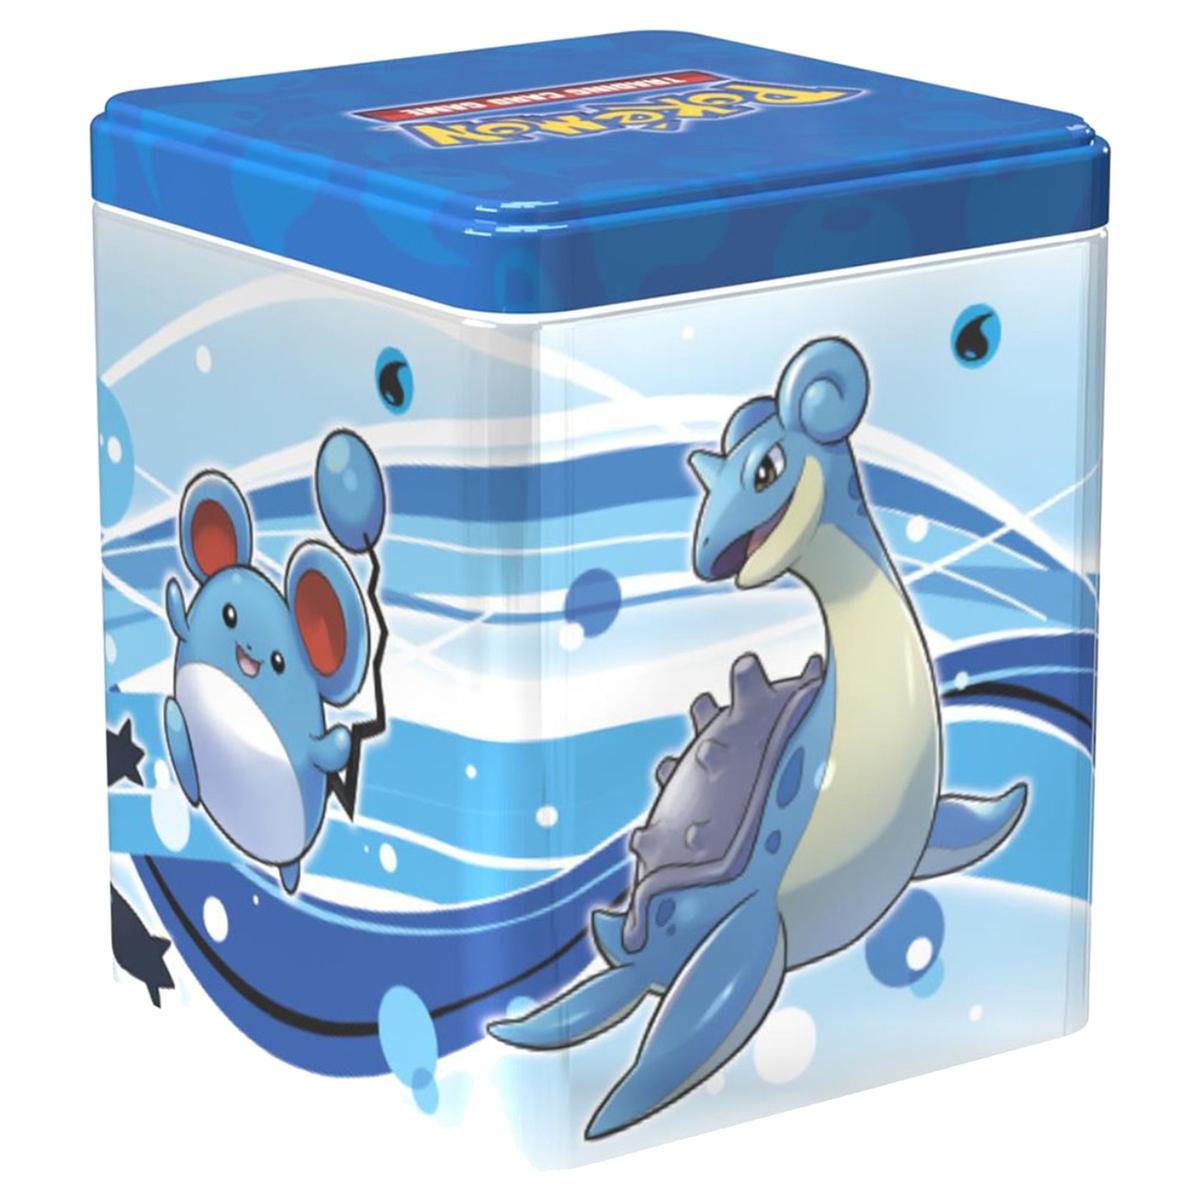 Jogo de cartas POKÉMON TCG: Pokémon Go Poké Ball Tin (1 Unidade - Envio  Aleatório - Idade Mínima Recomendada: 6 Anos)